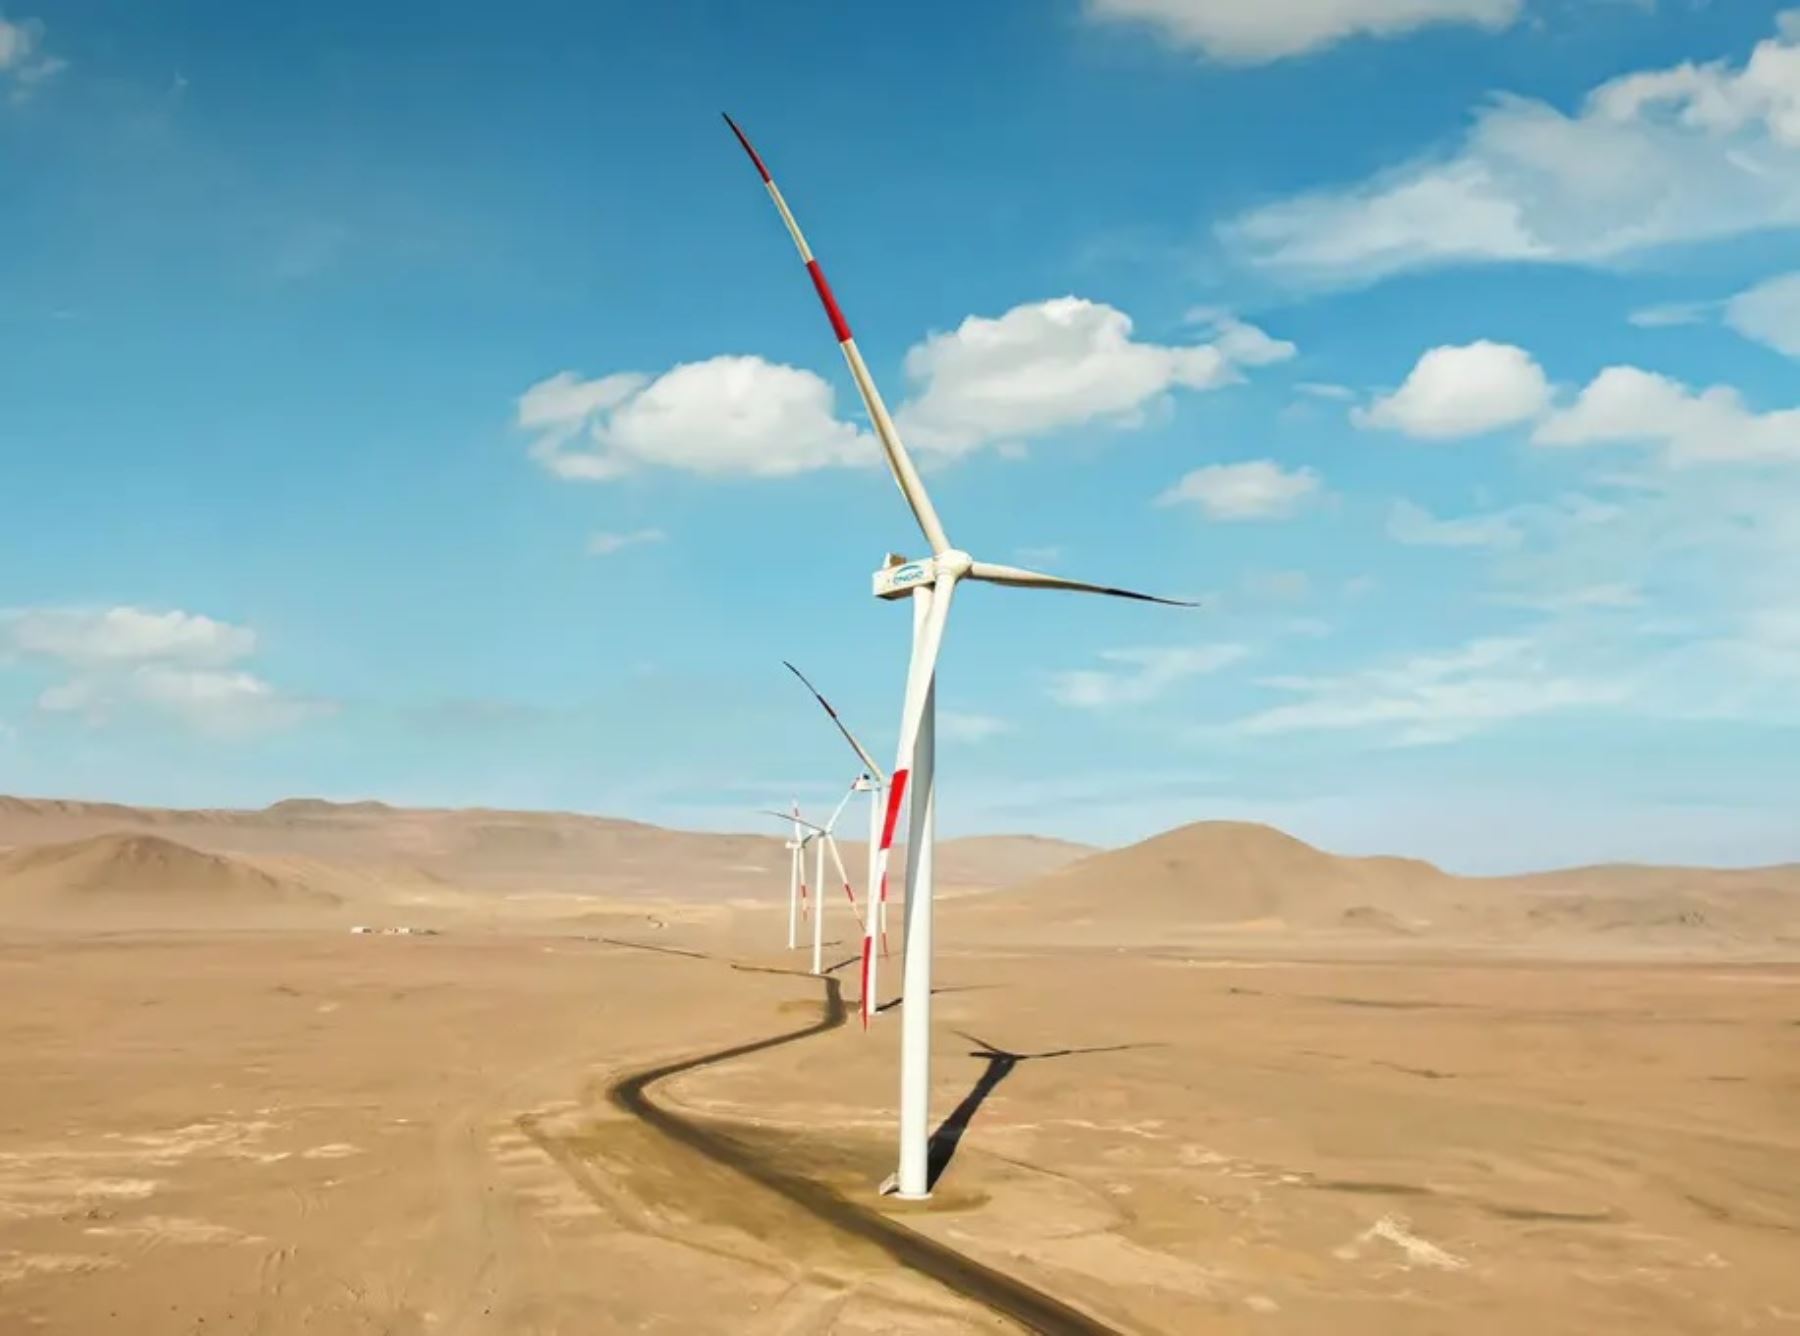 La central eólica ayudará al Perú a incrementar el componente de energía renovable no convencional. Cortesía